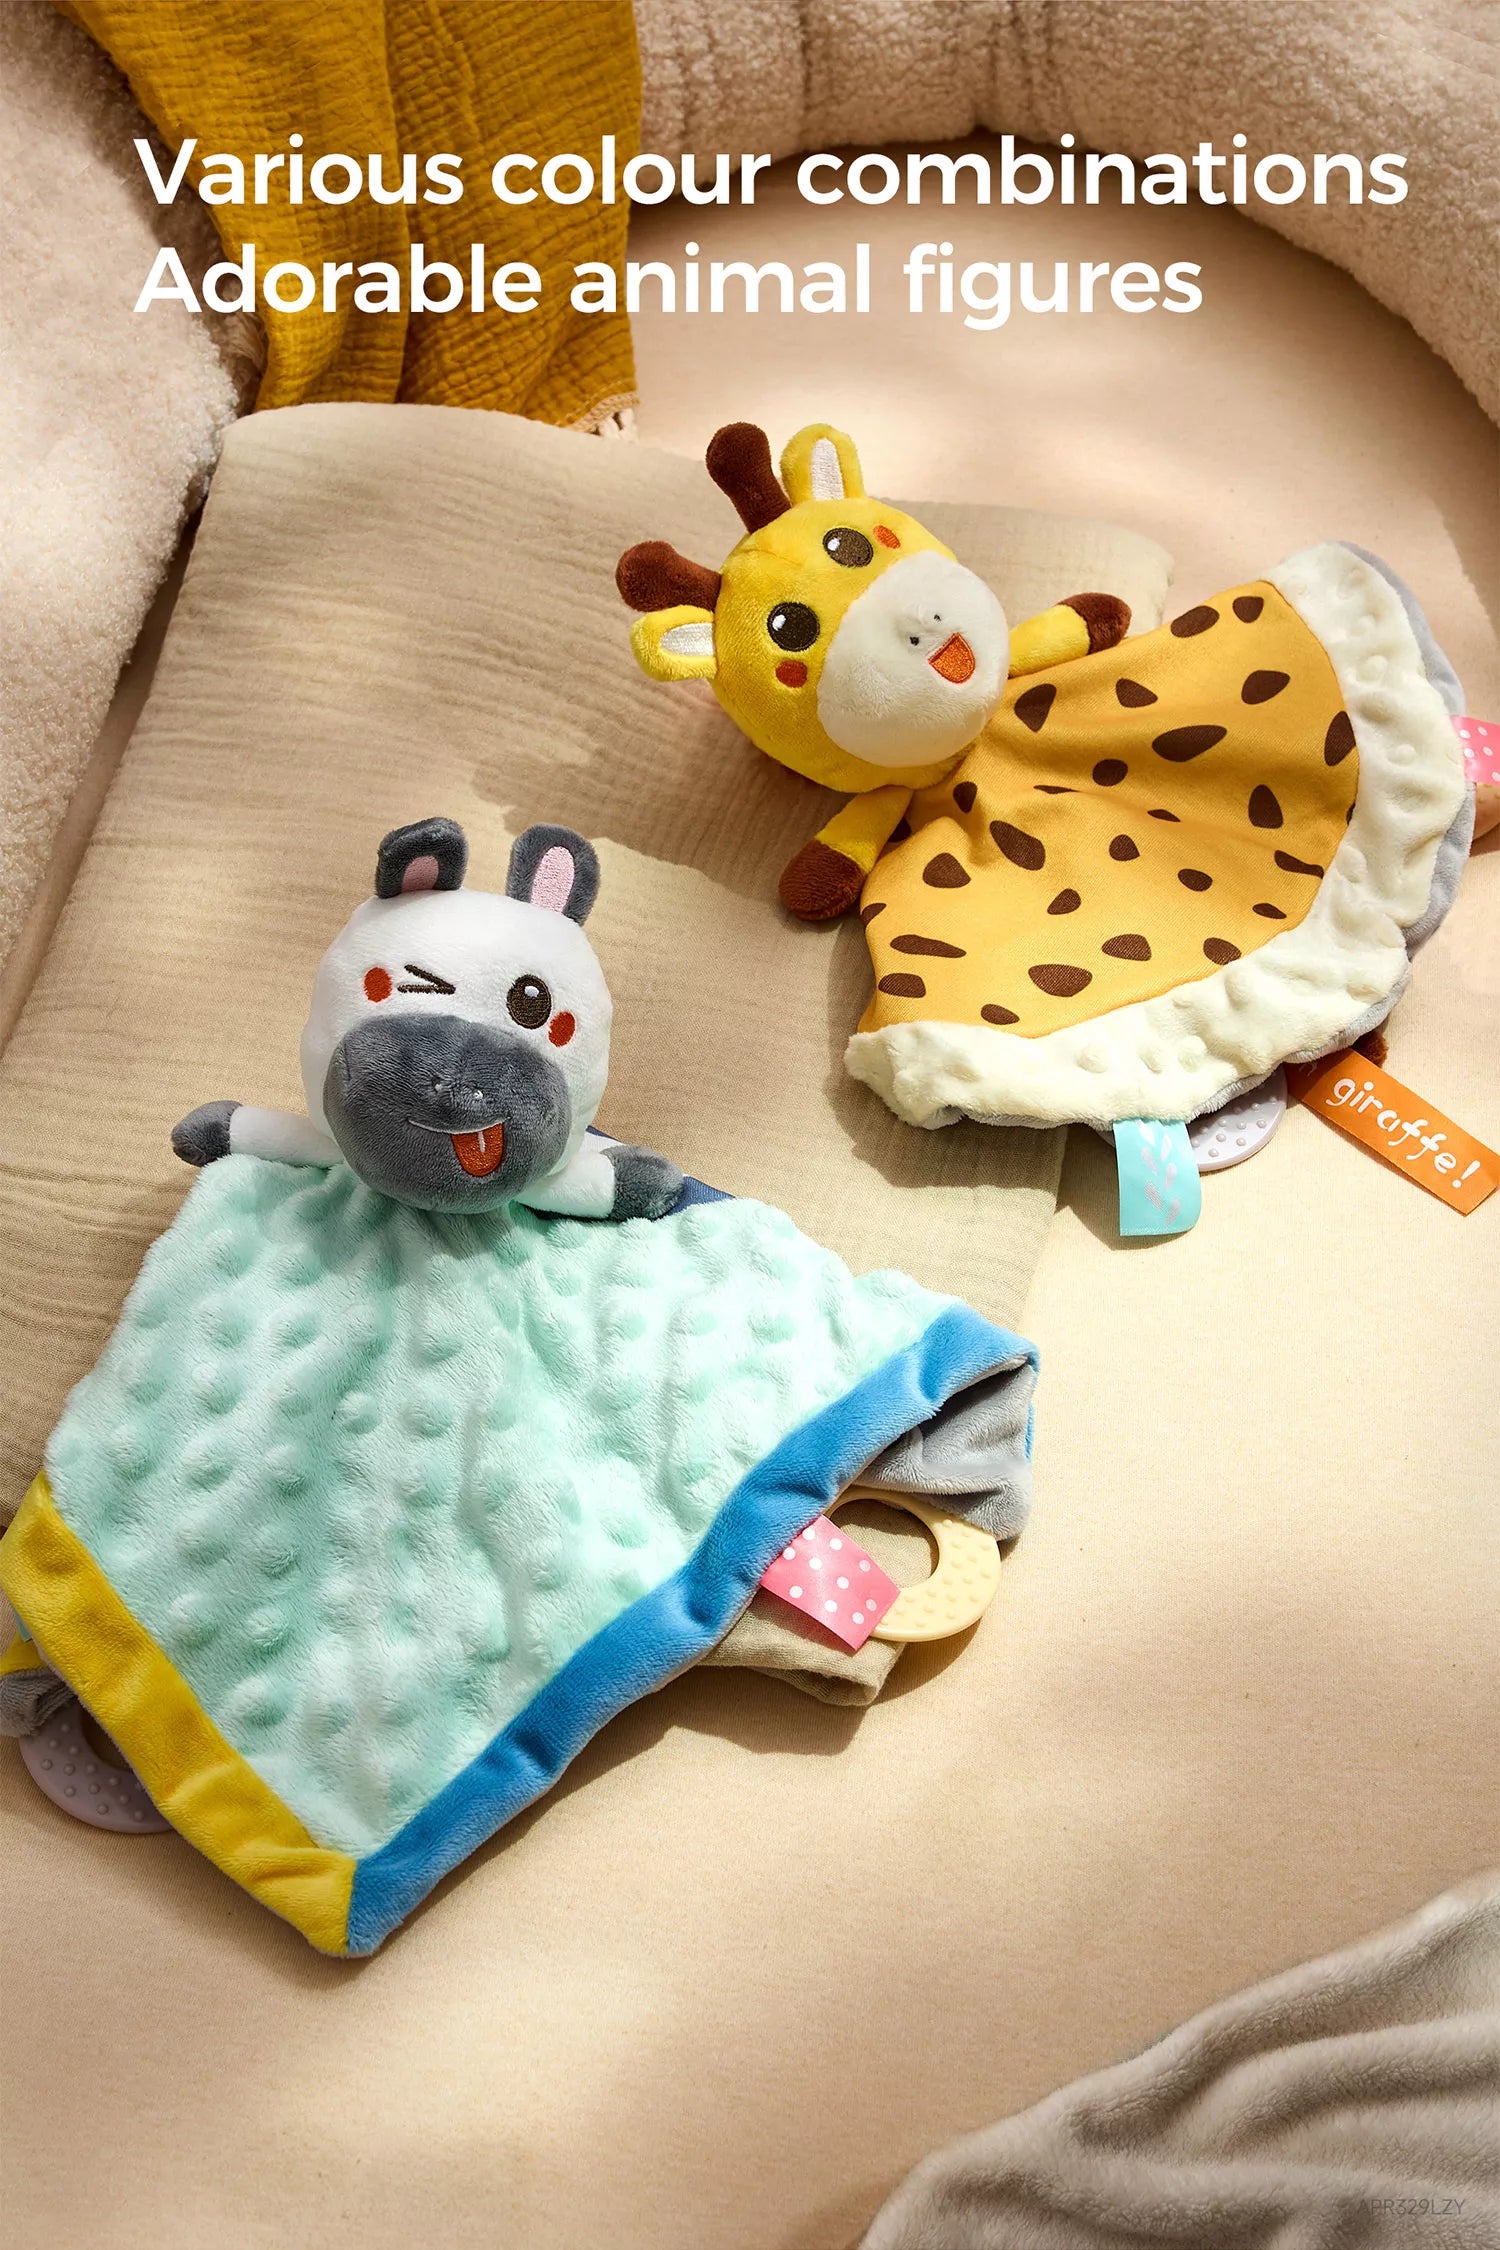 Teething friendly comfort blanket for babies